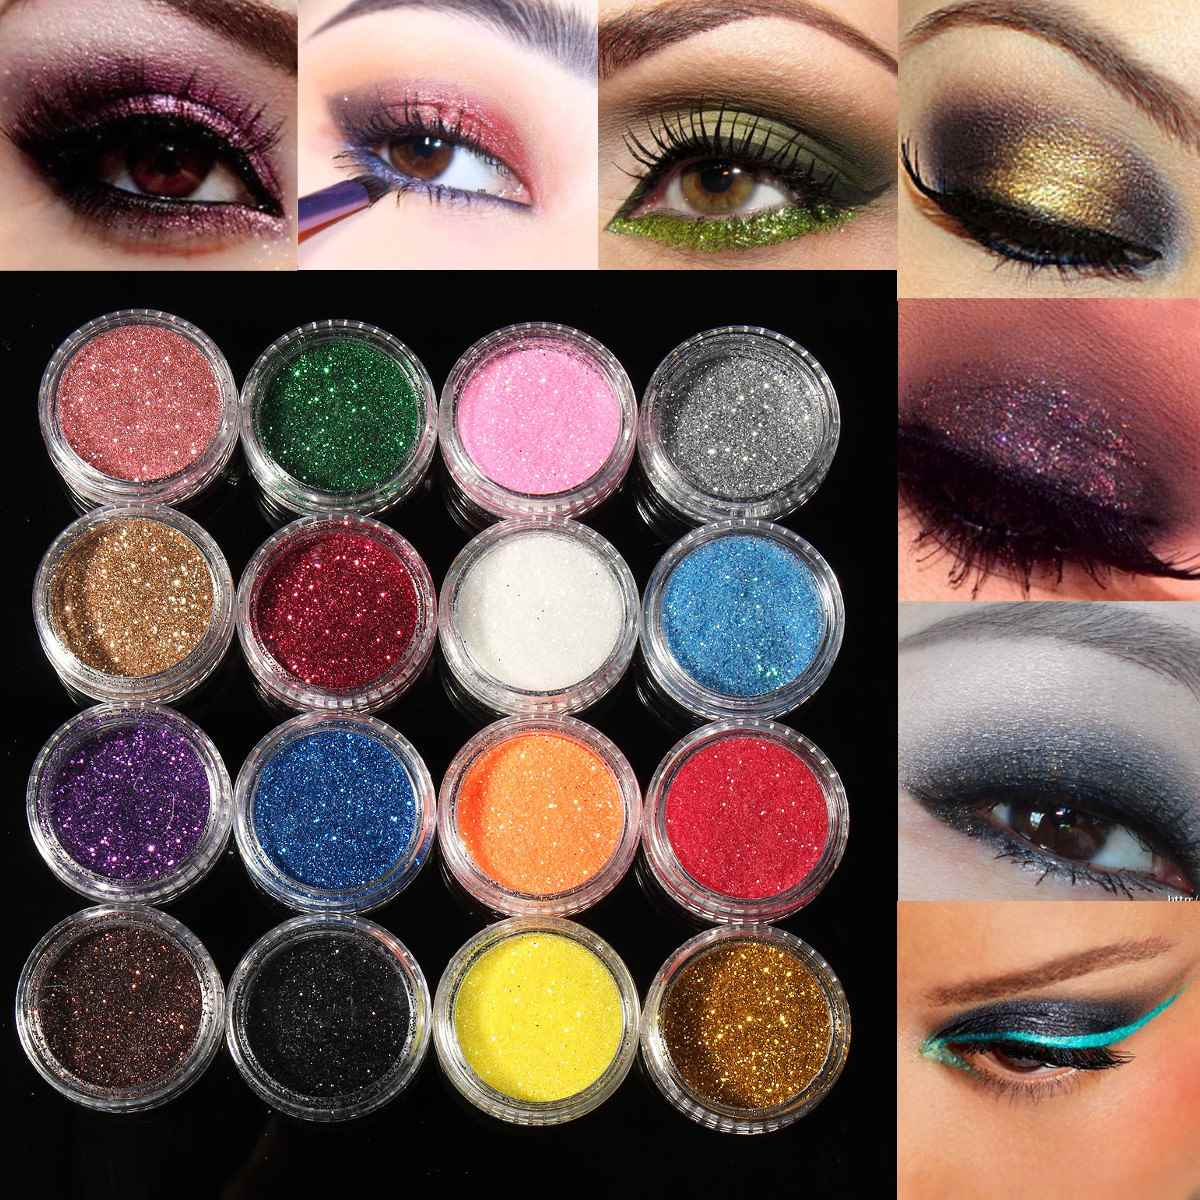 Shiny Eye Makeup Professional 16 Mixed Colors Glitter Eyeshadow Eye Shadow Makeup